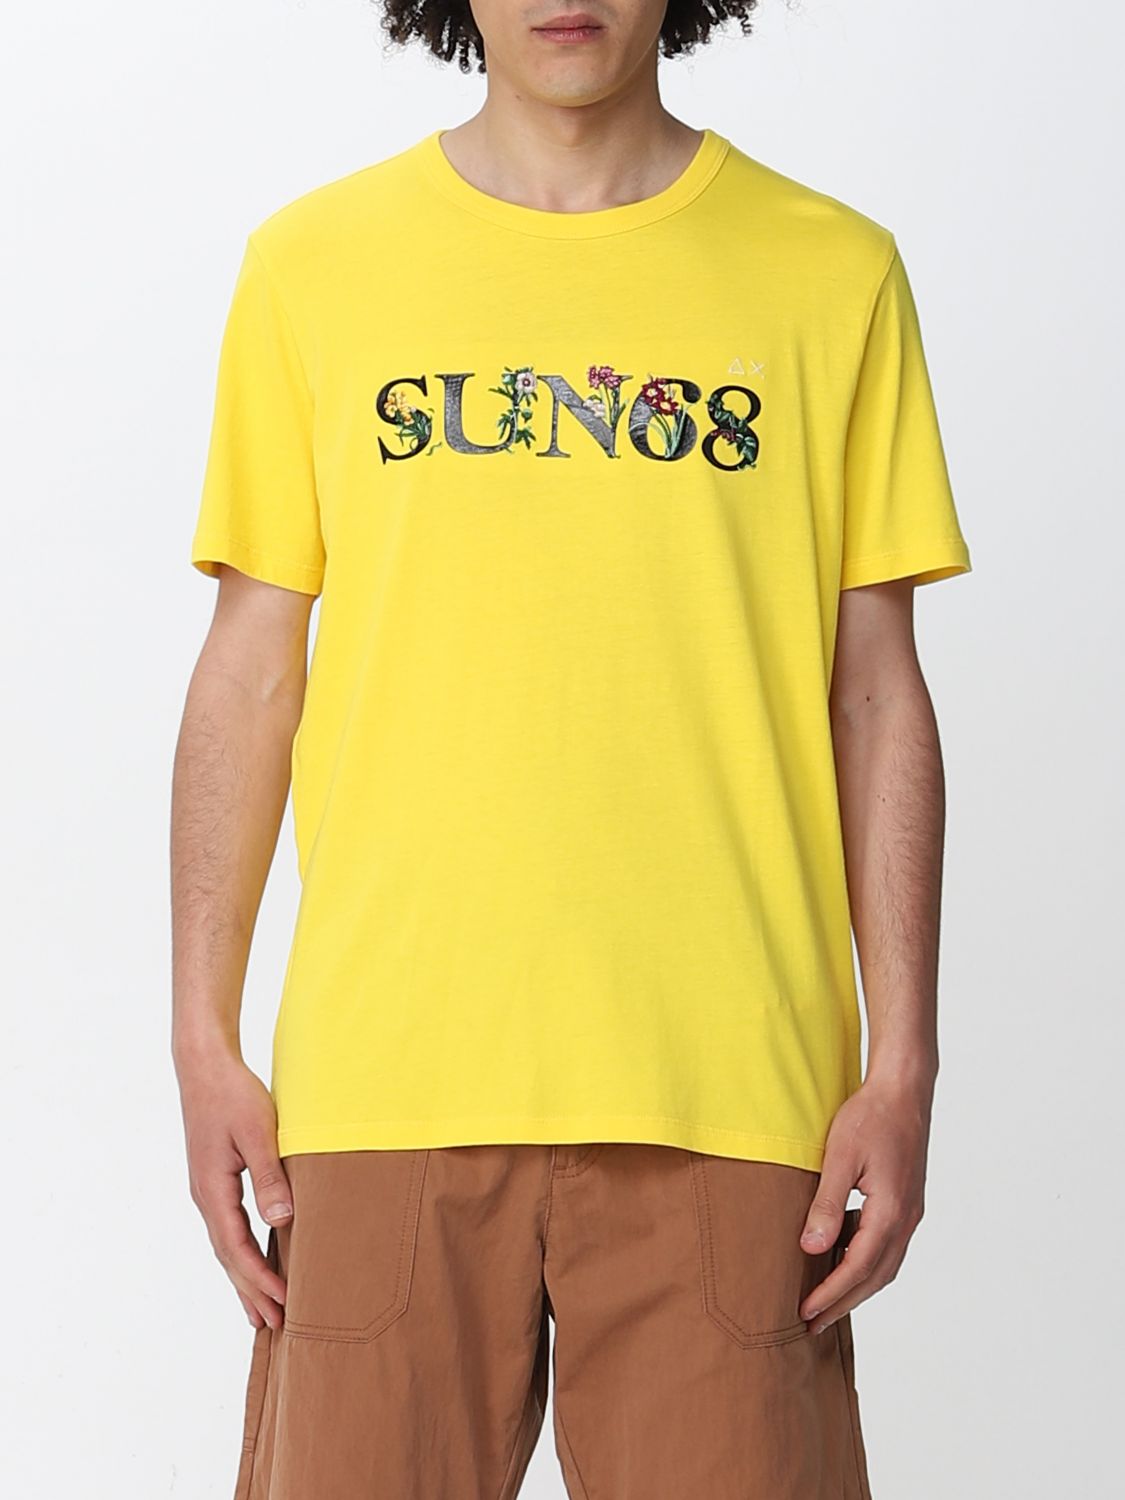 Sun 68 Outlet: t-shirt for man - Yellow | Sun 68 t-shirt T32109 online ...